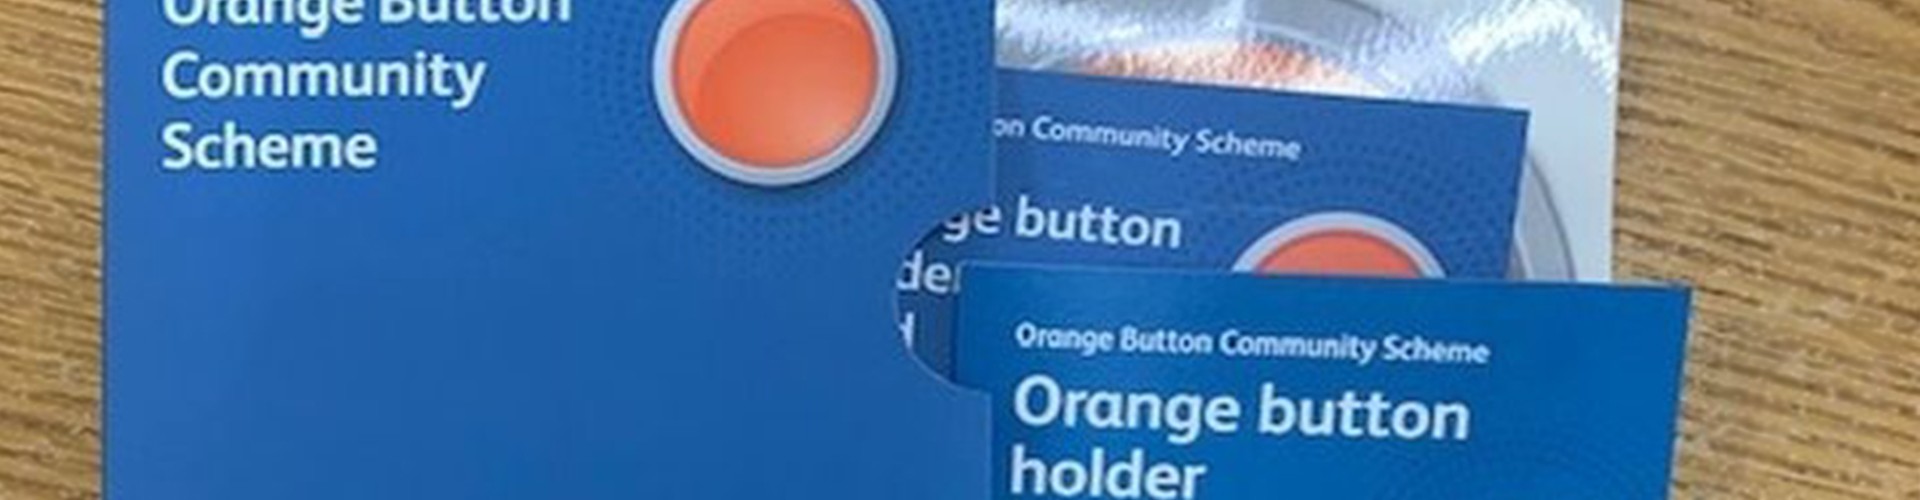 orange button community scheme pack 